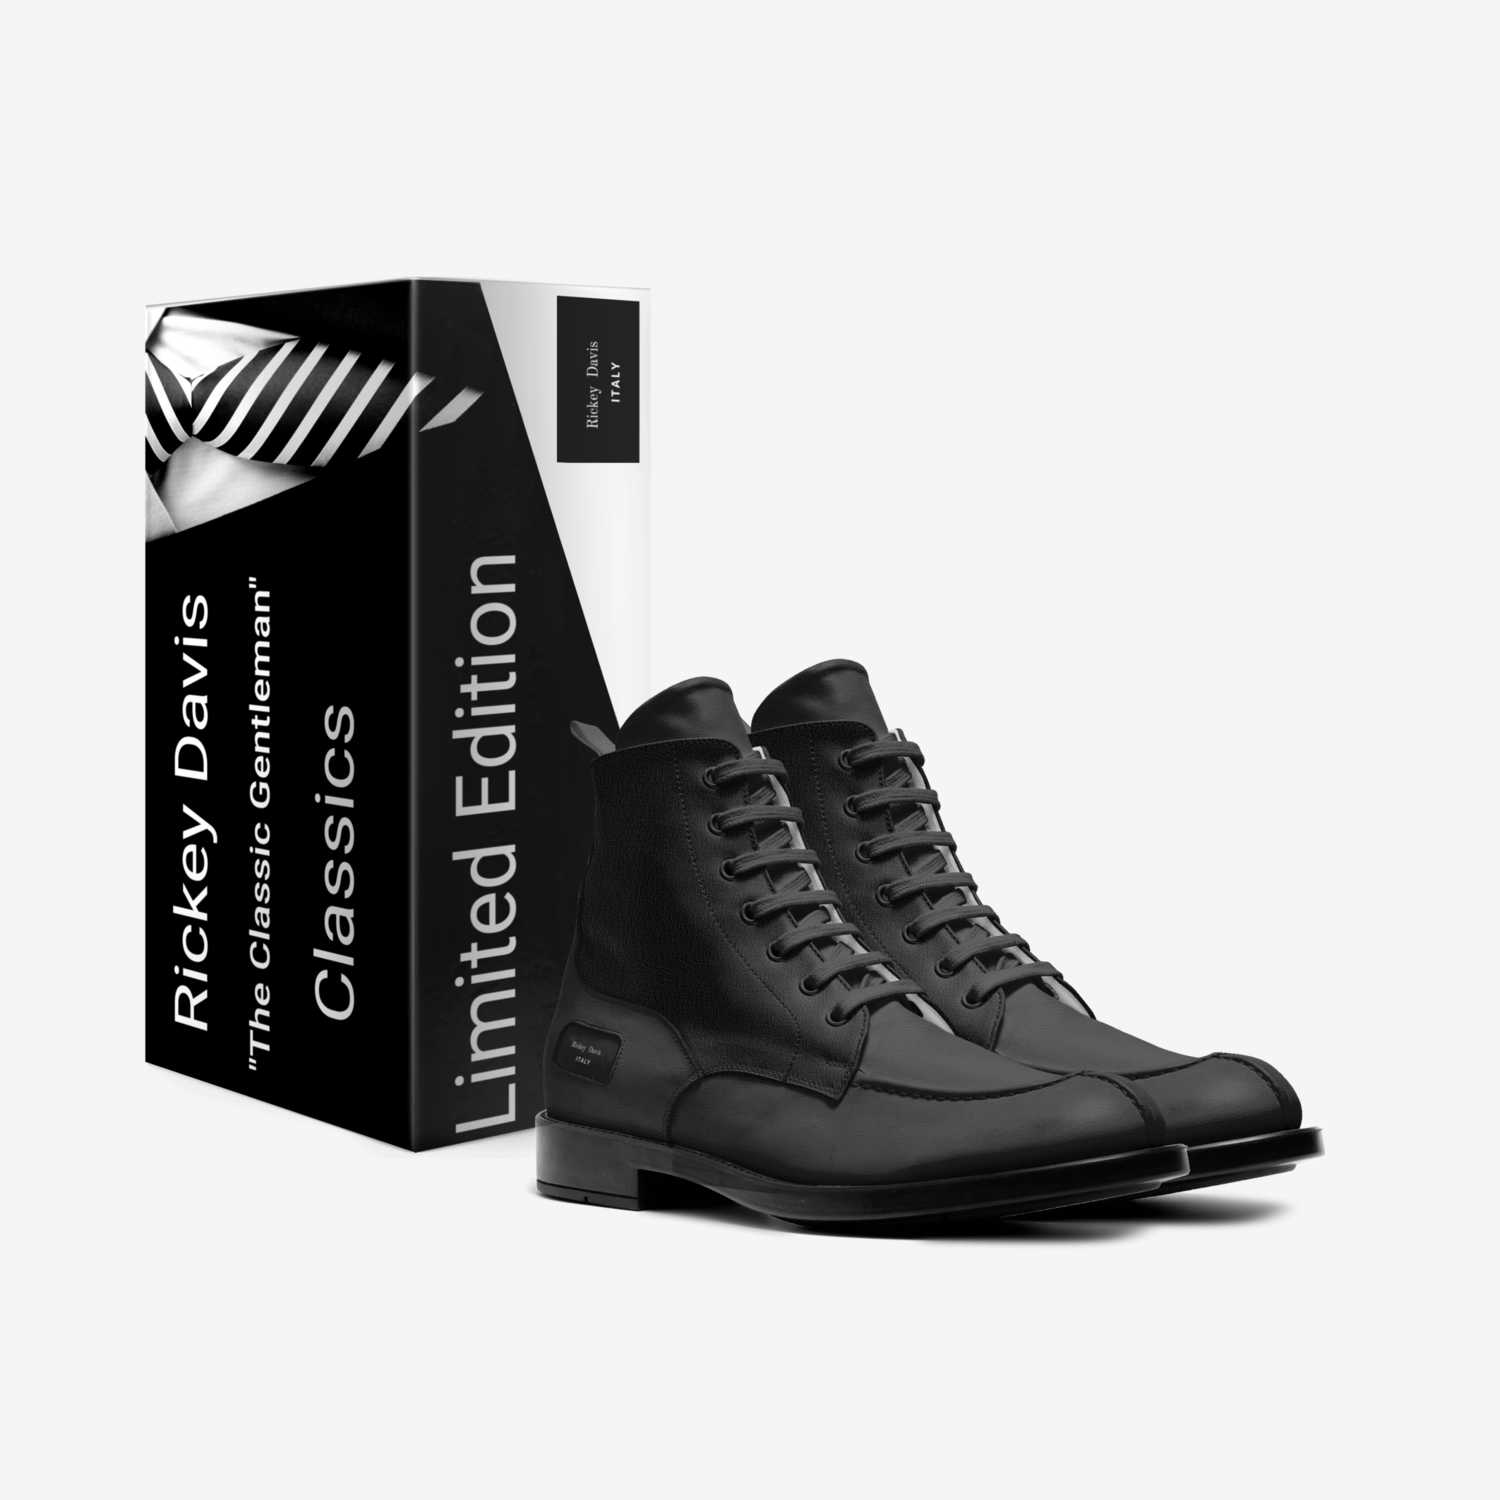 Rickey  Davis  custom made in Italy shoes by Rickey Davis | Box view